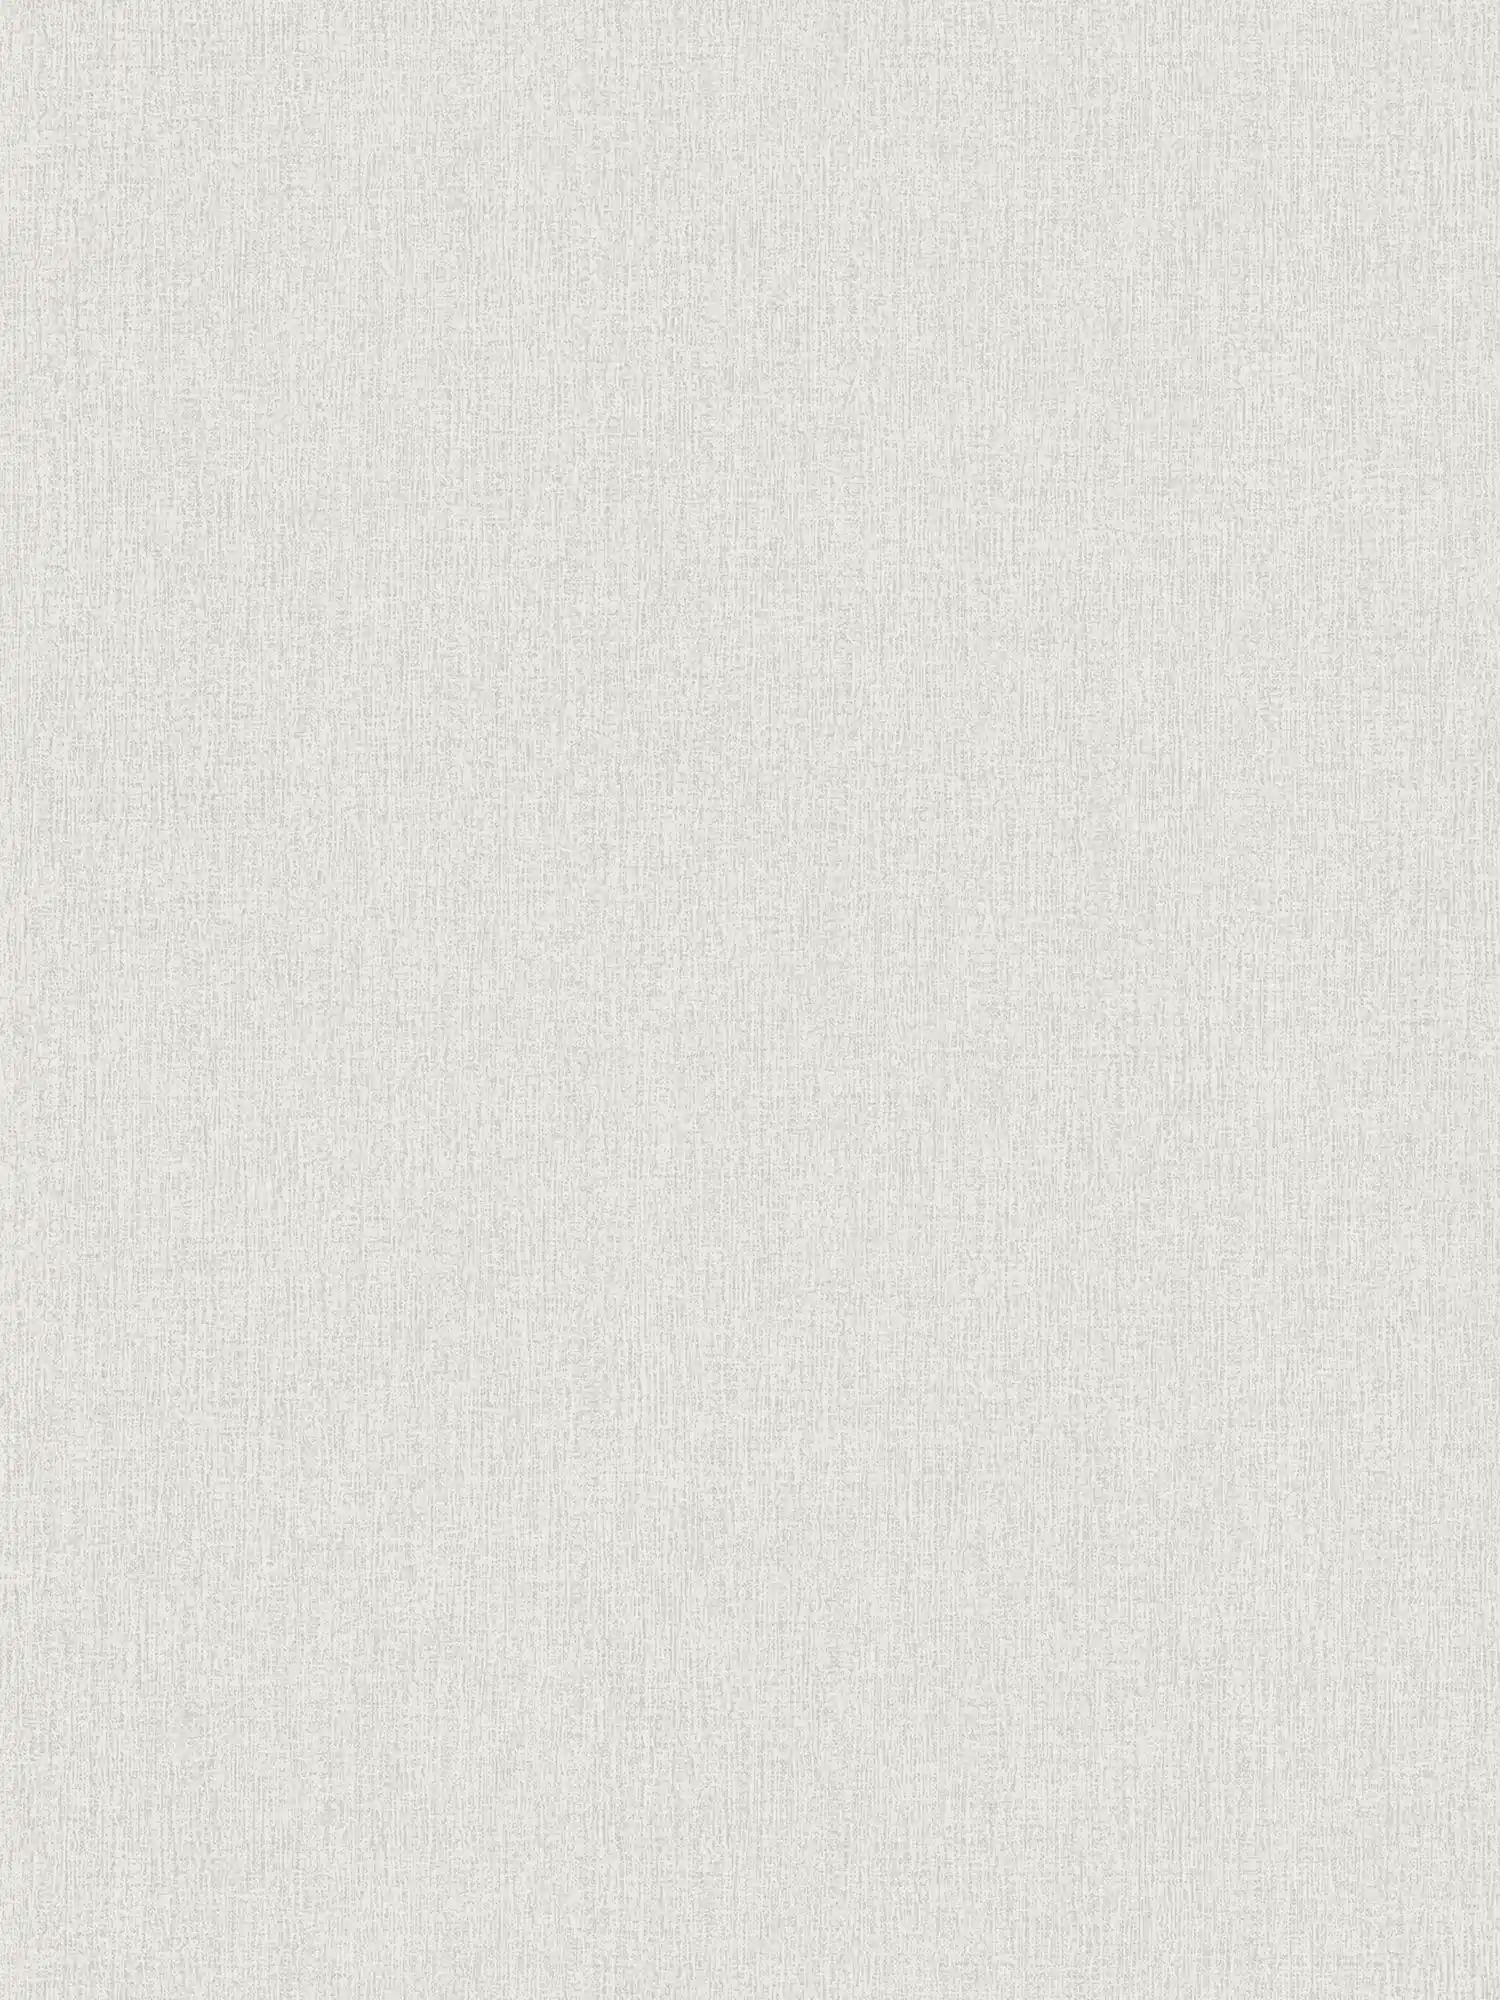 Papier peint aspect lin, uni & chiné - blanc
